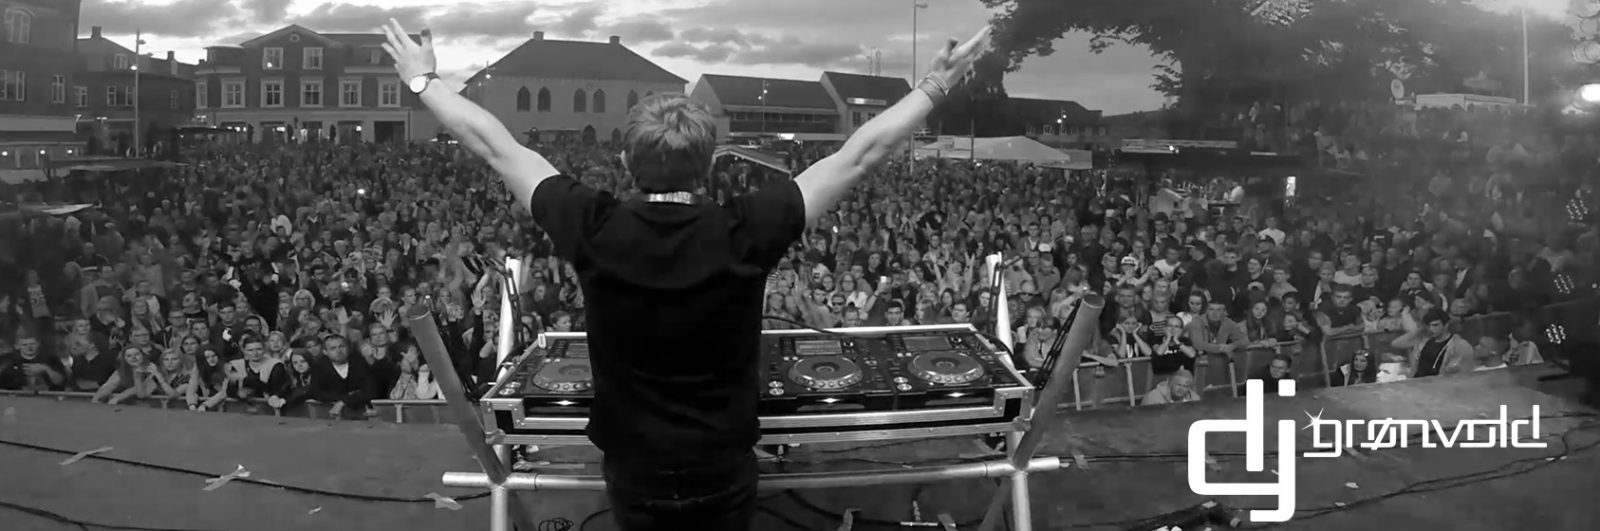 DJ Grønvold med arme i vejret - coverbillede